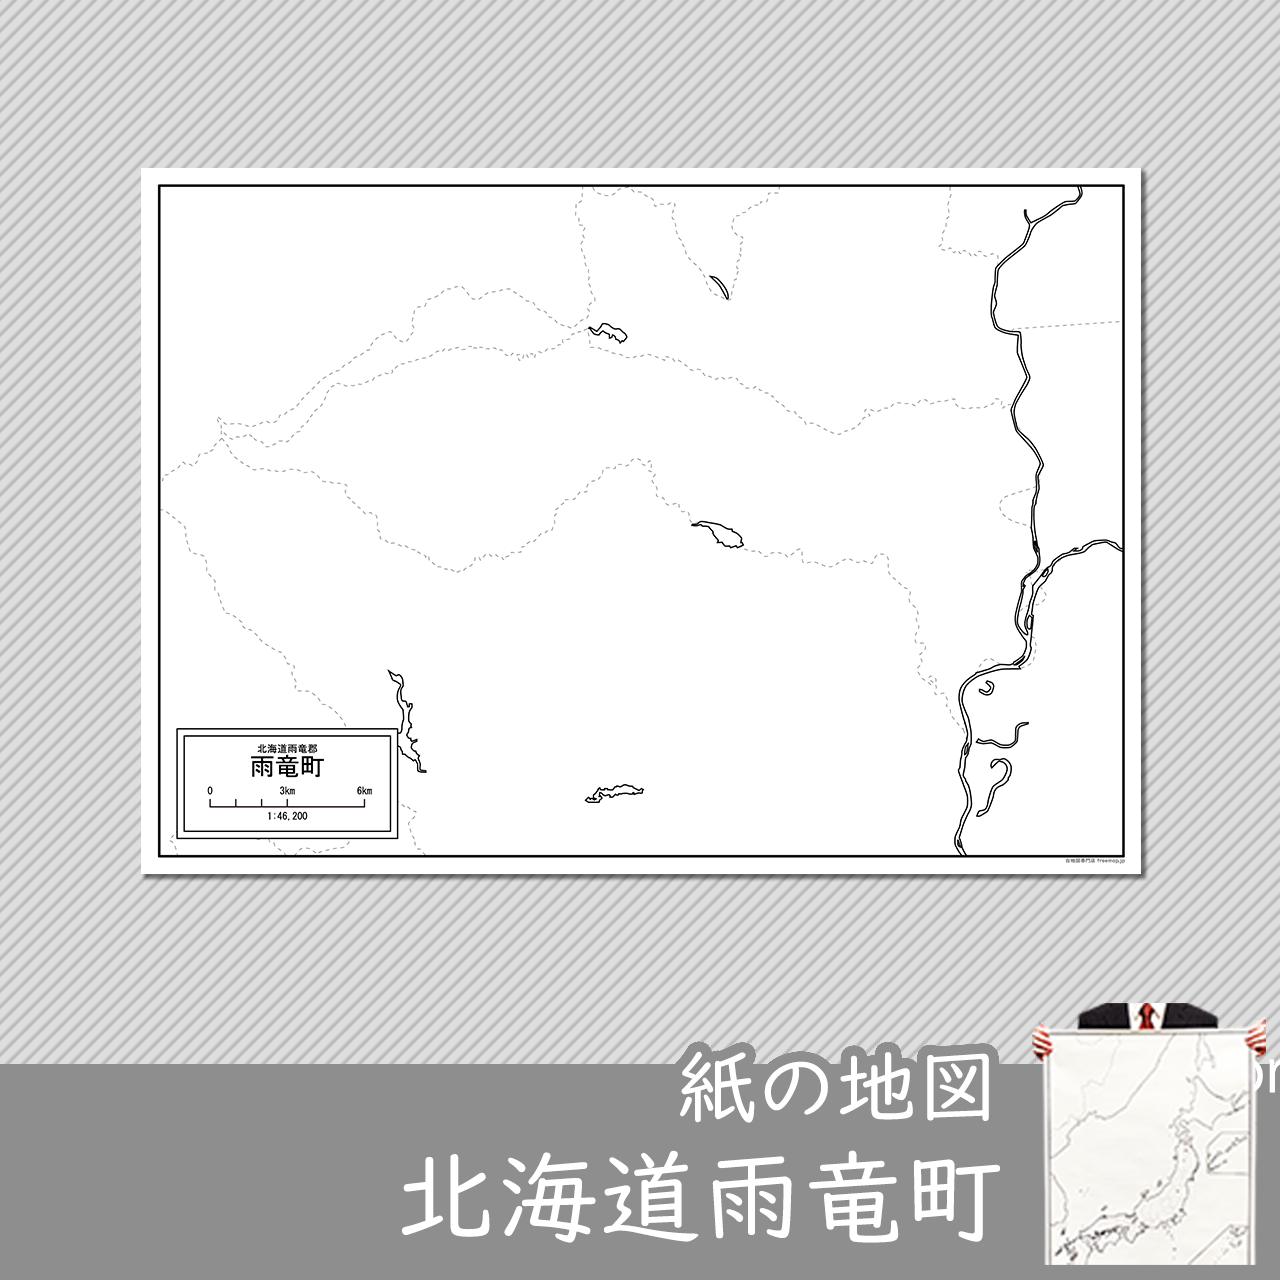 雨竜町の紙の白地図のサムネイル